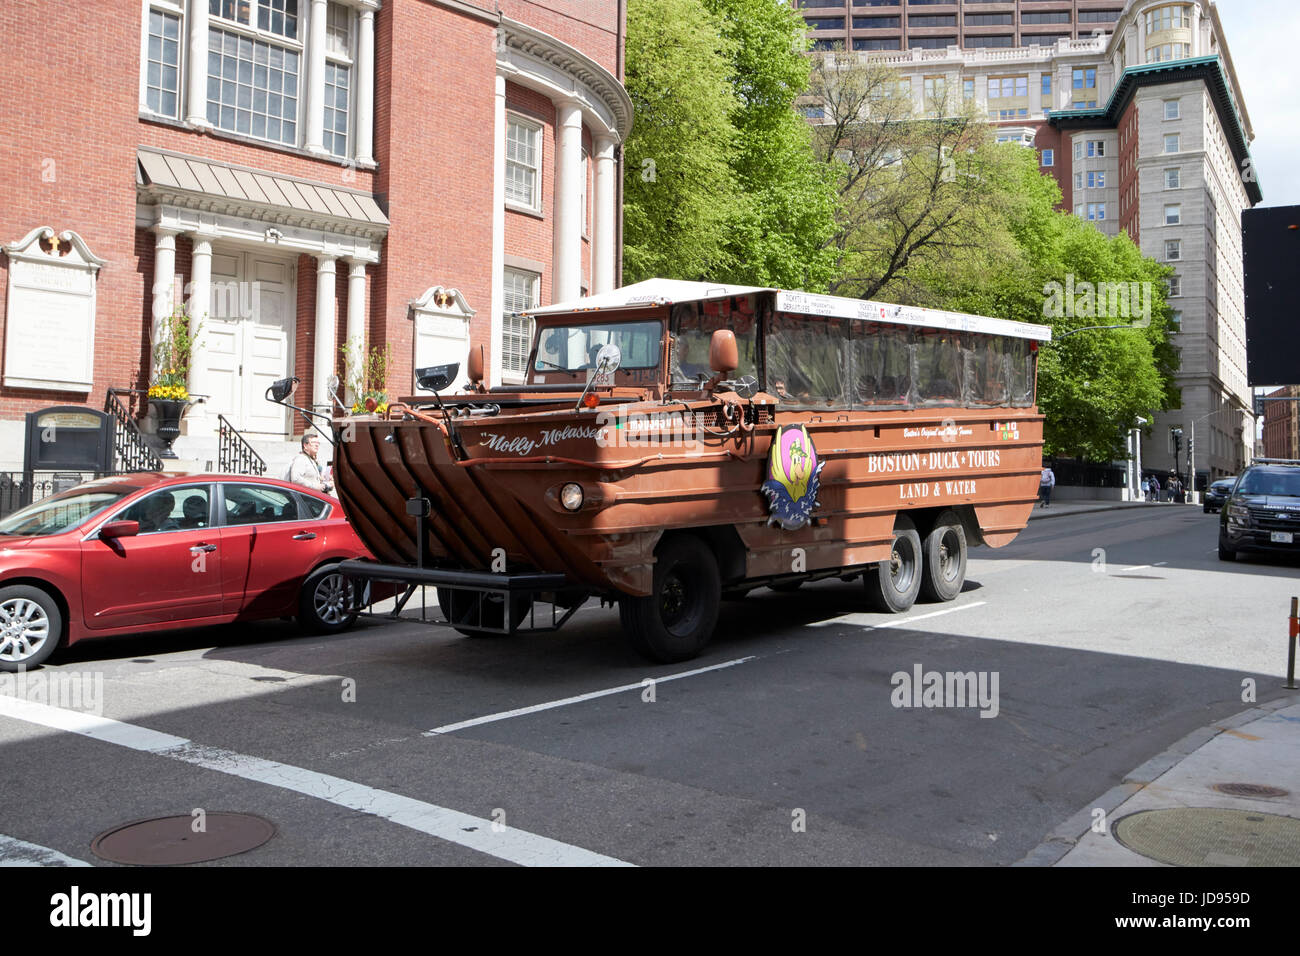 Boston duck tours guided tour through the streets of boston USA Stock Photo